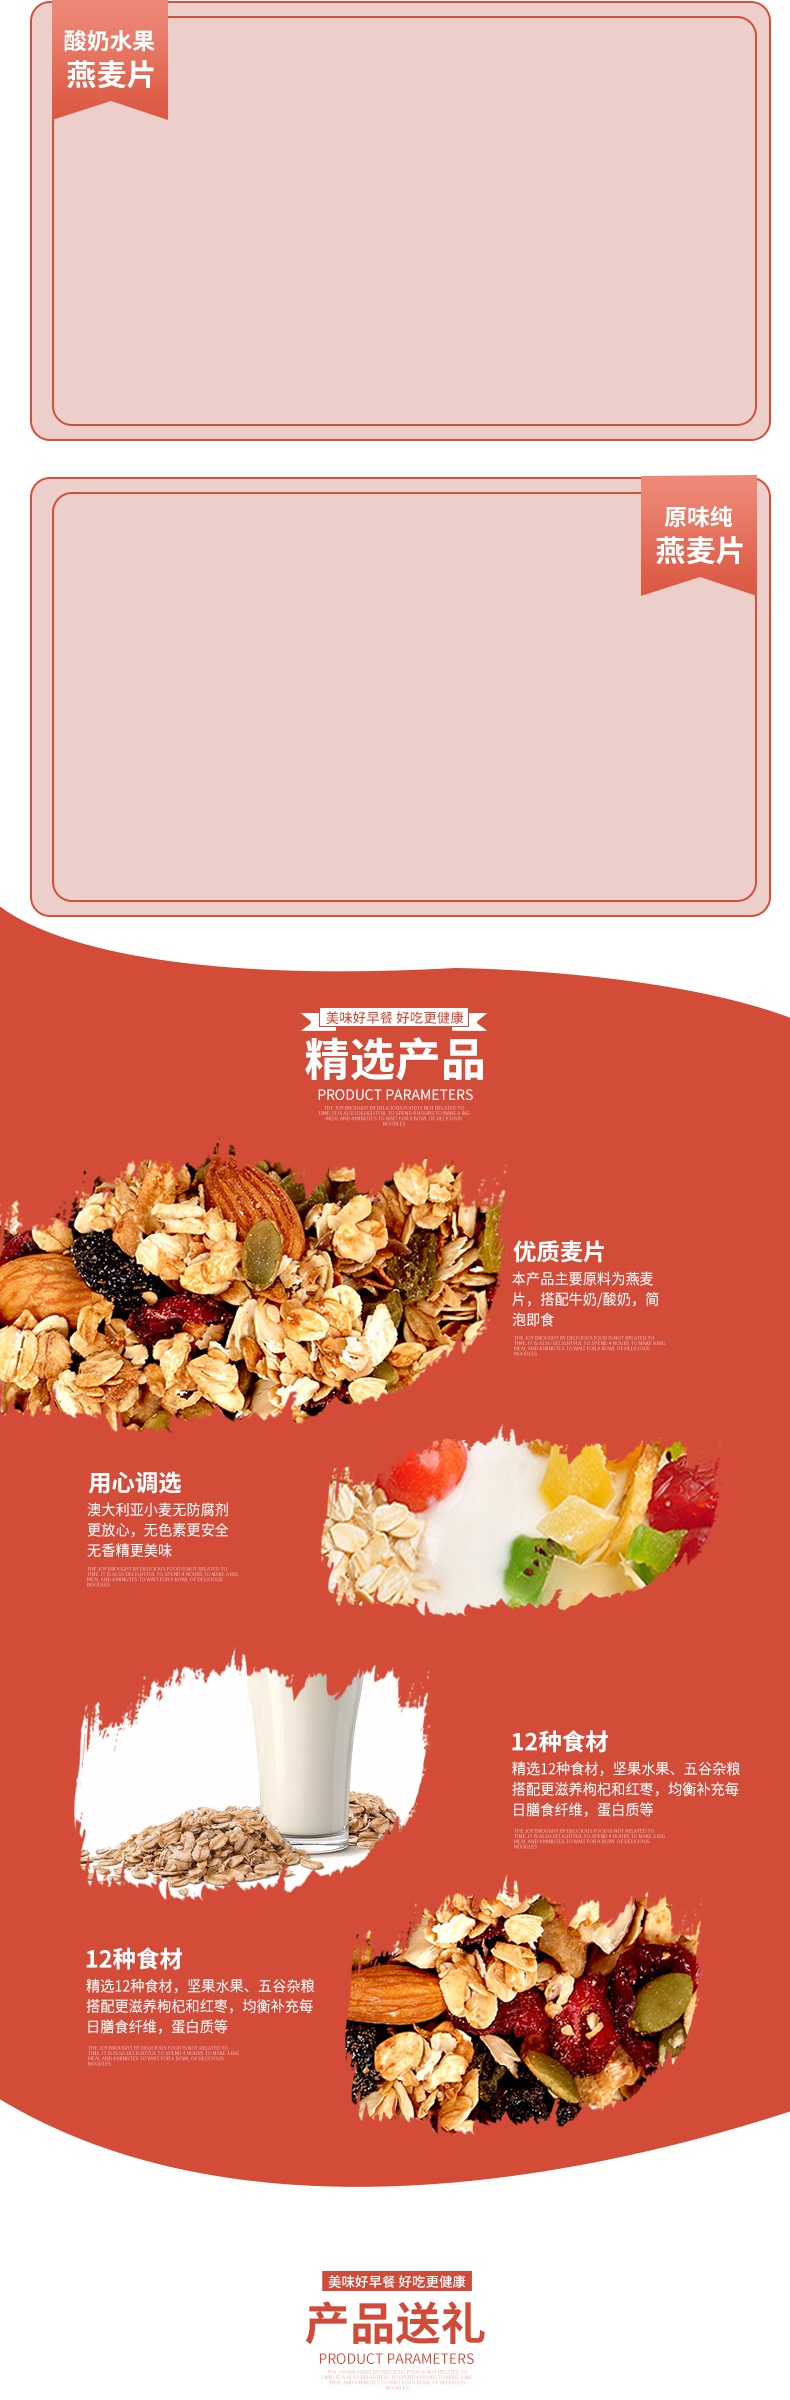 水果燕麦片保健品营养食品简约详情页描述